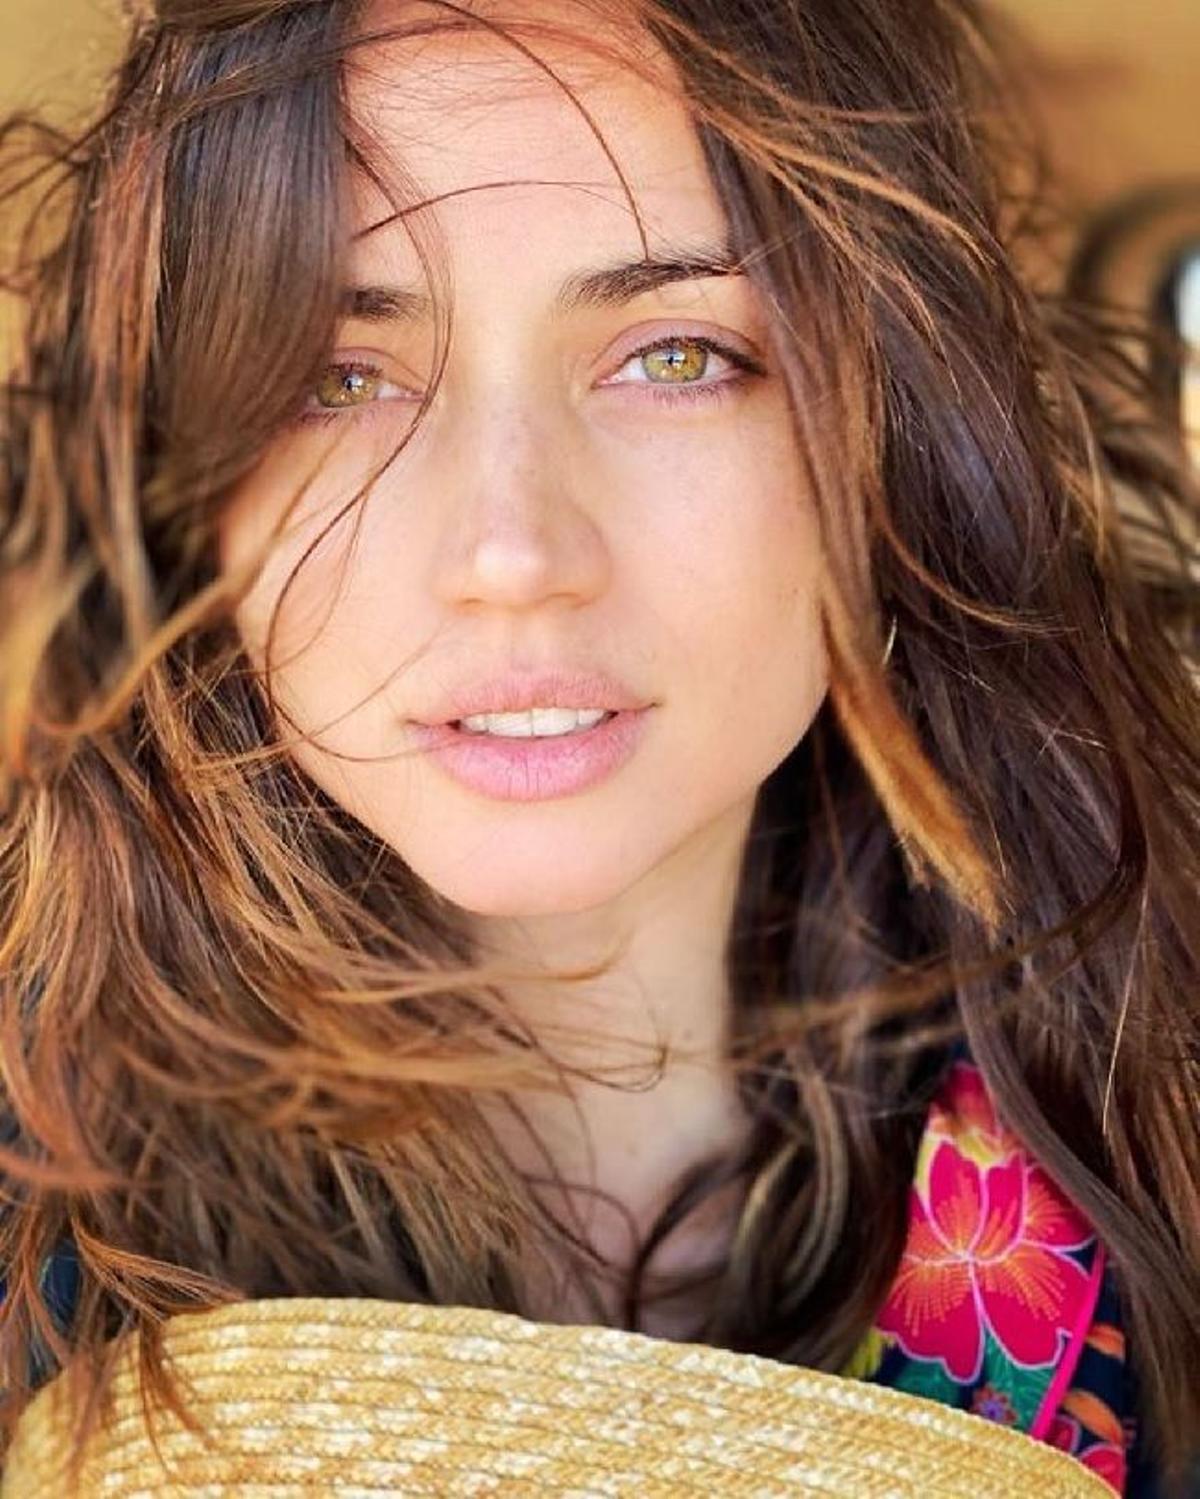 El 'selfie' de Ana de Armas sin maquillaje y despeinada en Instagram